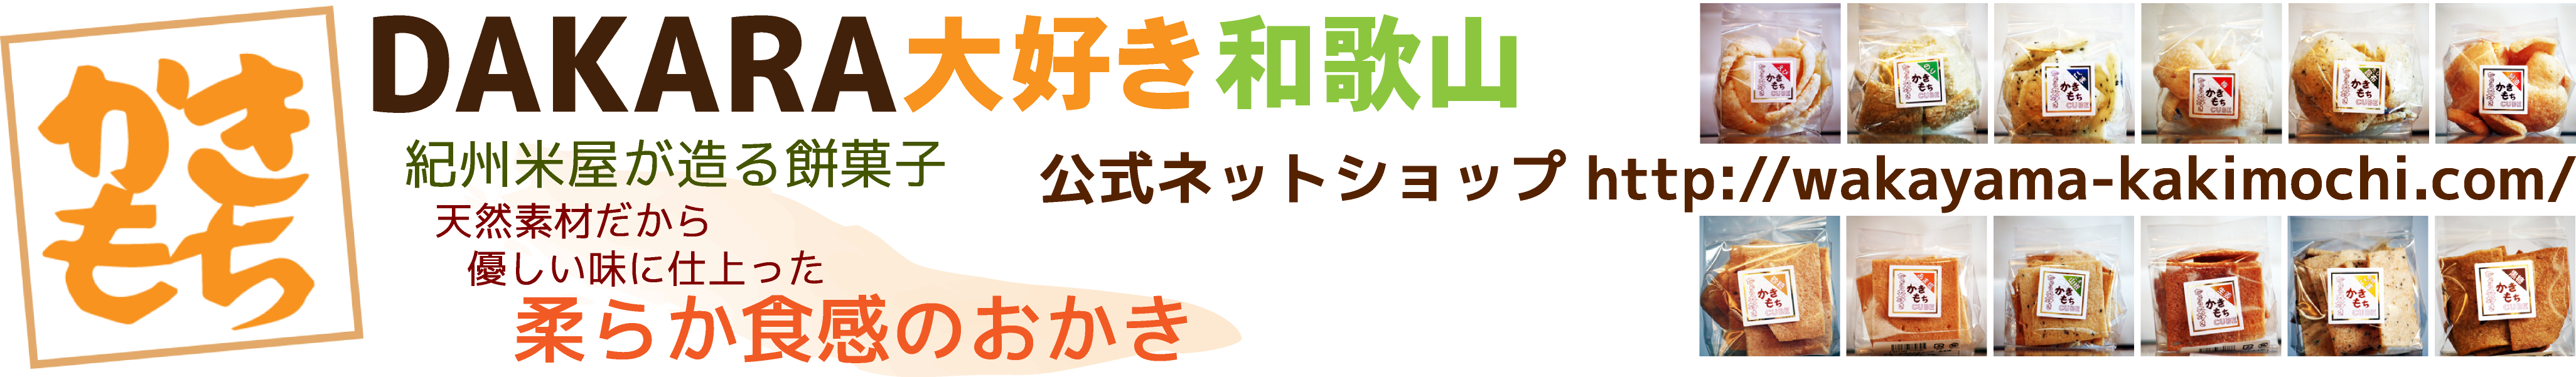 かきもちDAKARA大好き和歌山 公式ネットショップ https://wakayama-kakimochi.com/